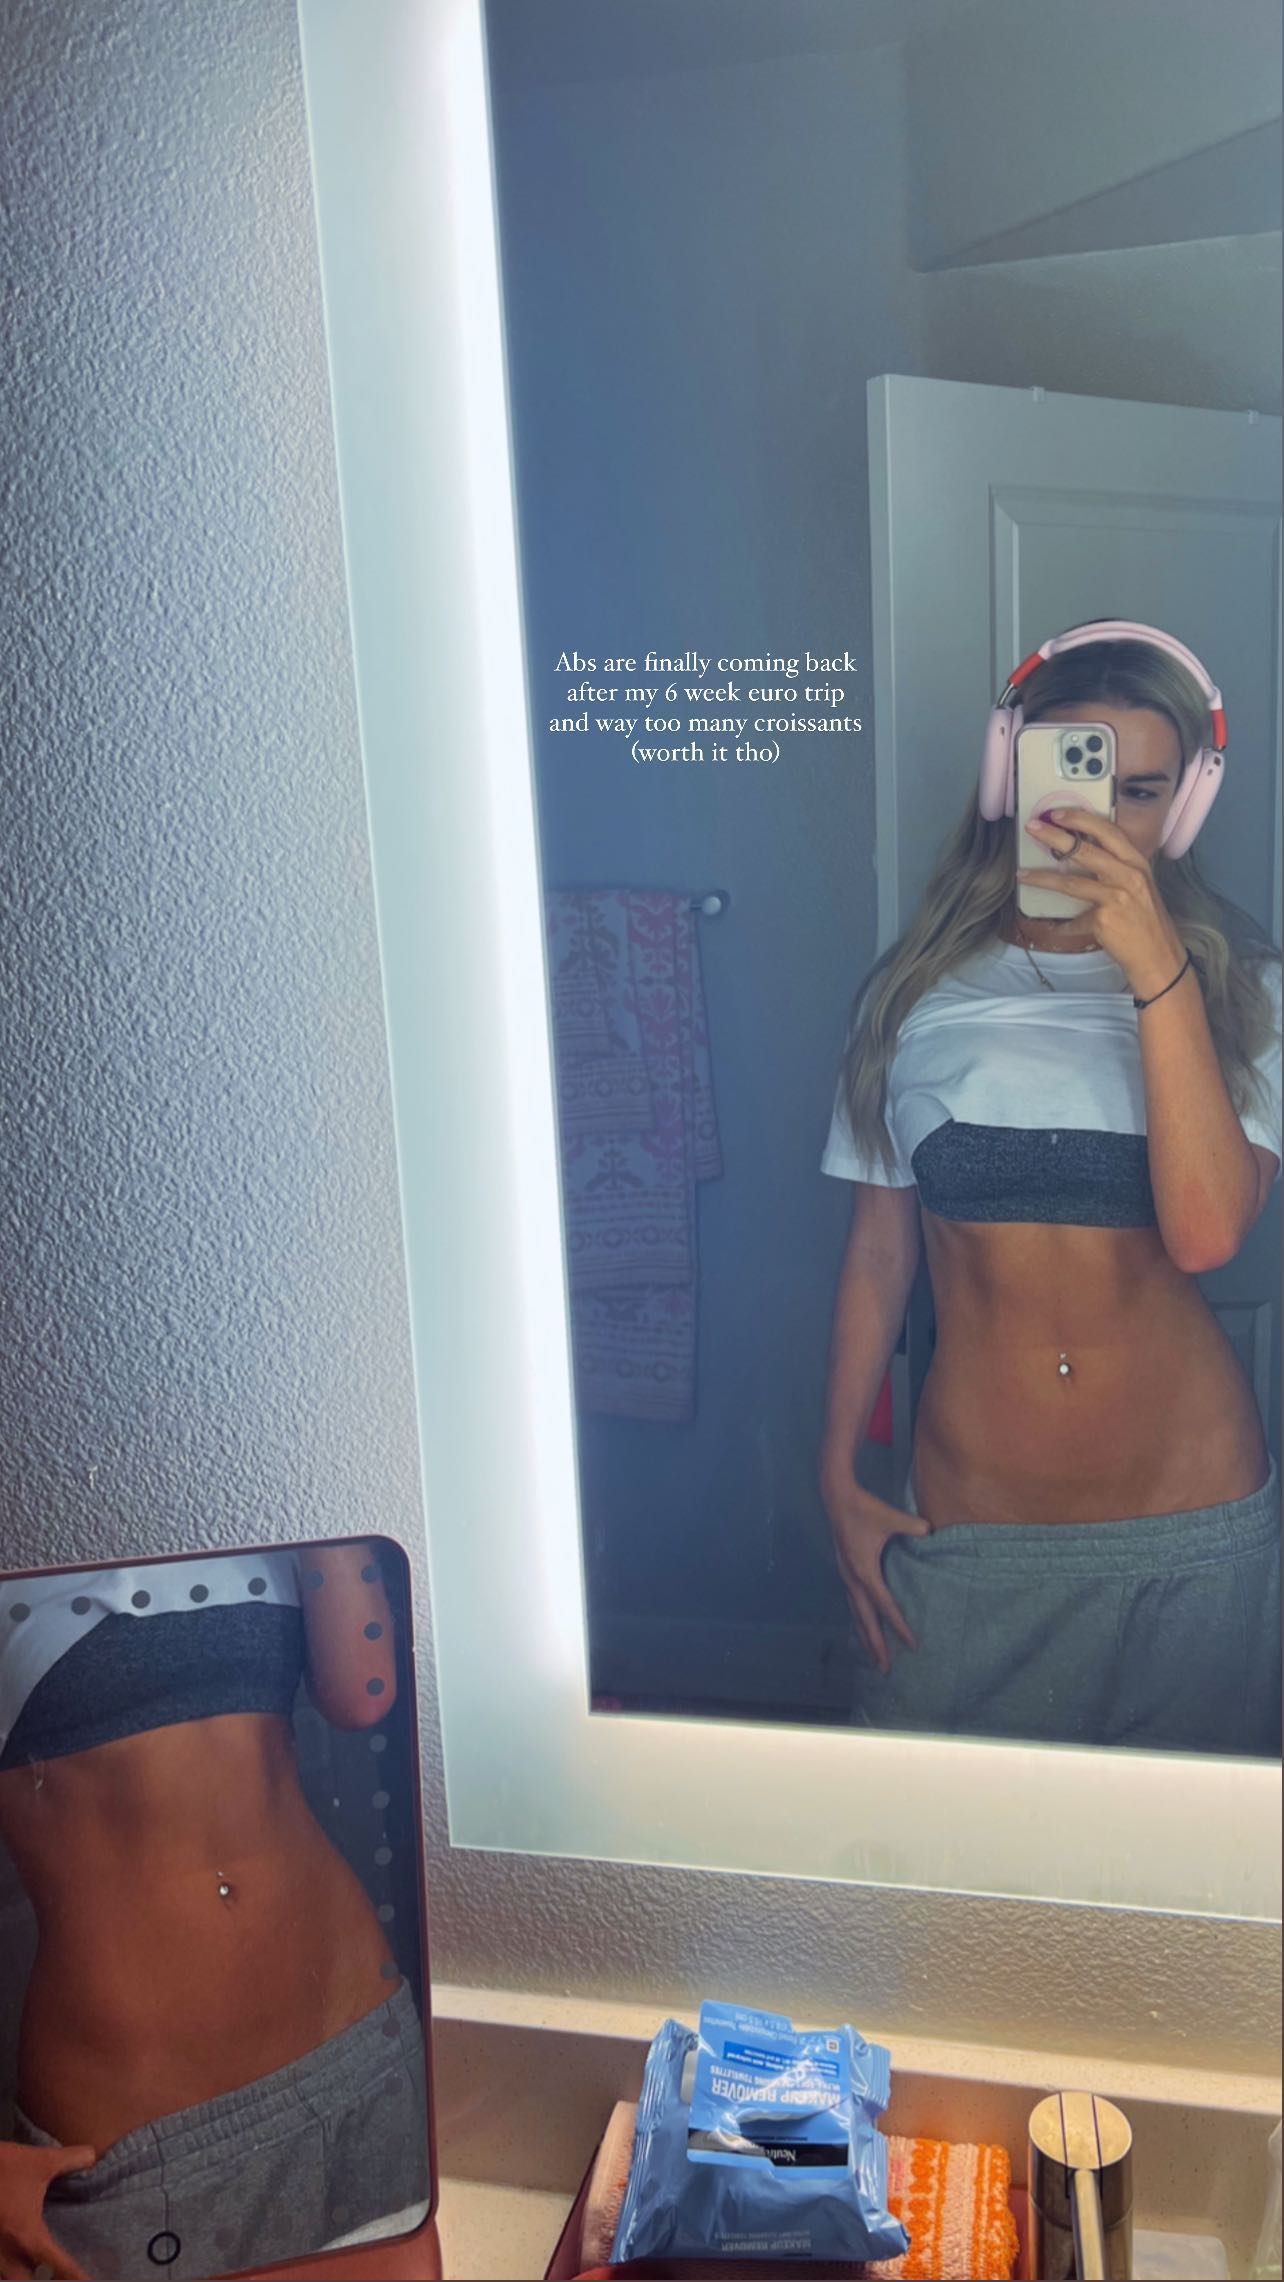 Die Influencerin zeigte auf einem weiteren Spiegel-Selfie ihre Bauchmuskeln